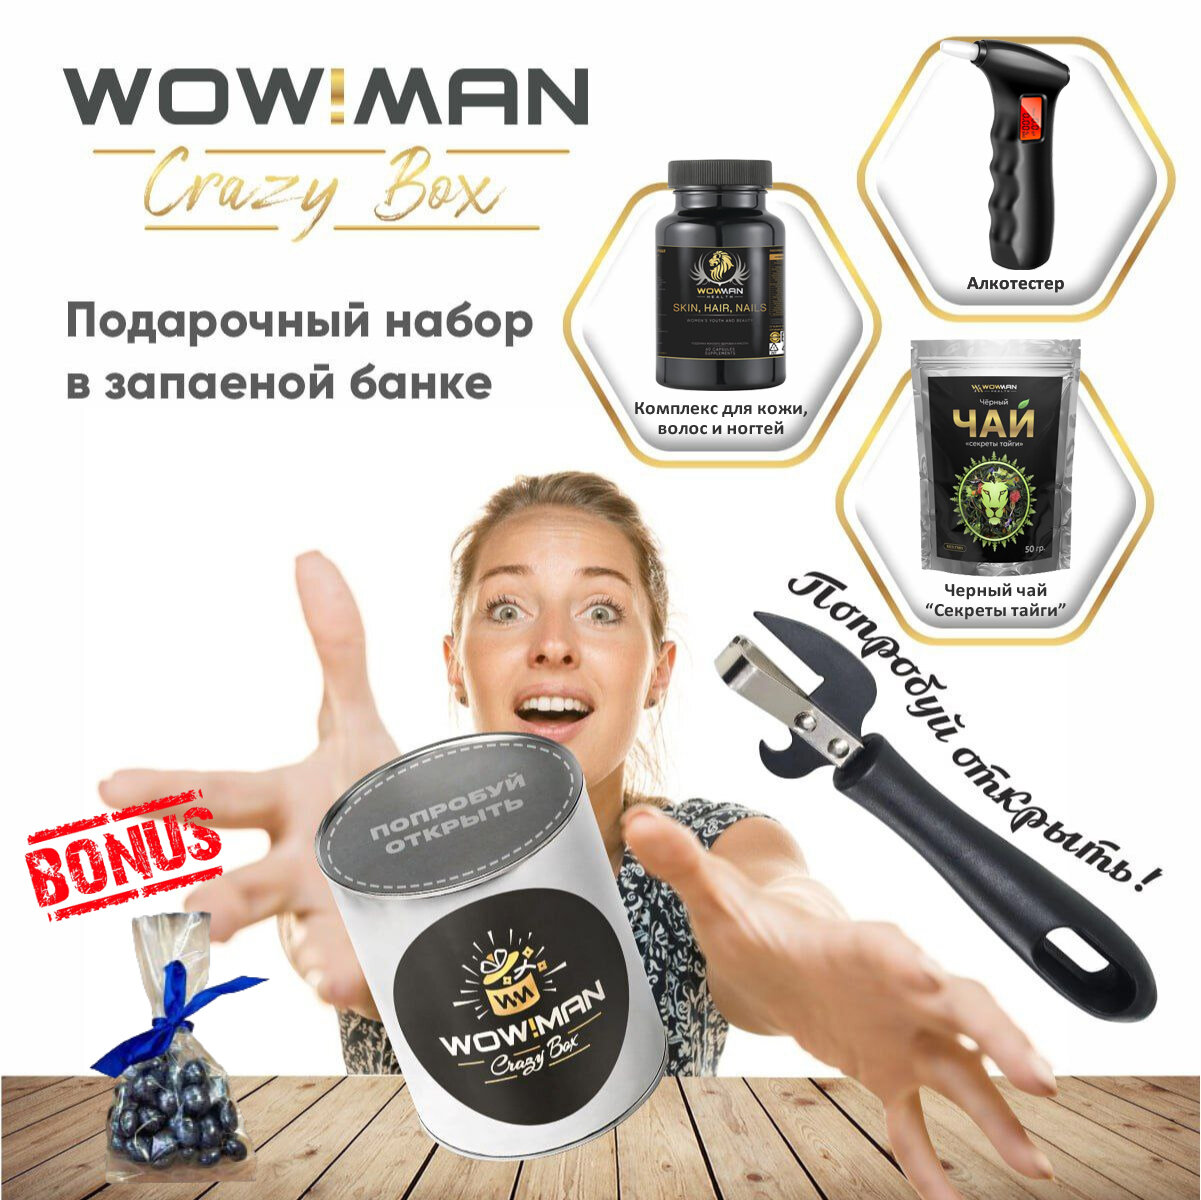 Подарочный набор WowMan Crazy Box Комплекс для кожи волос и ногтей/Алкотестер BandRate Smart BRSA65SR/Черный чай 